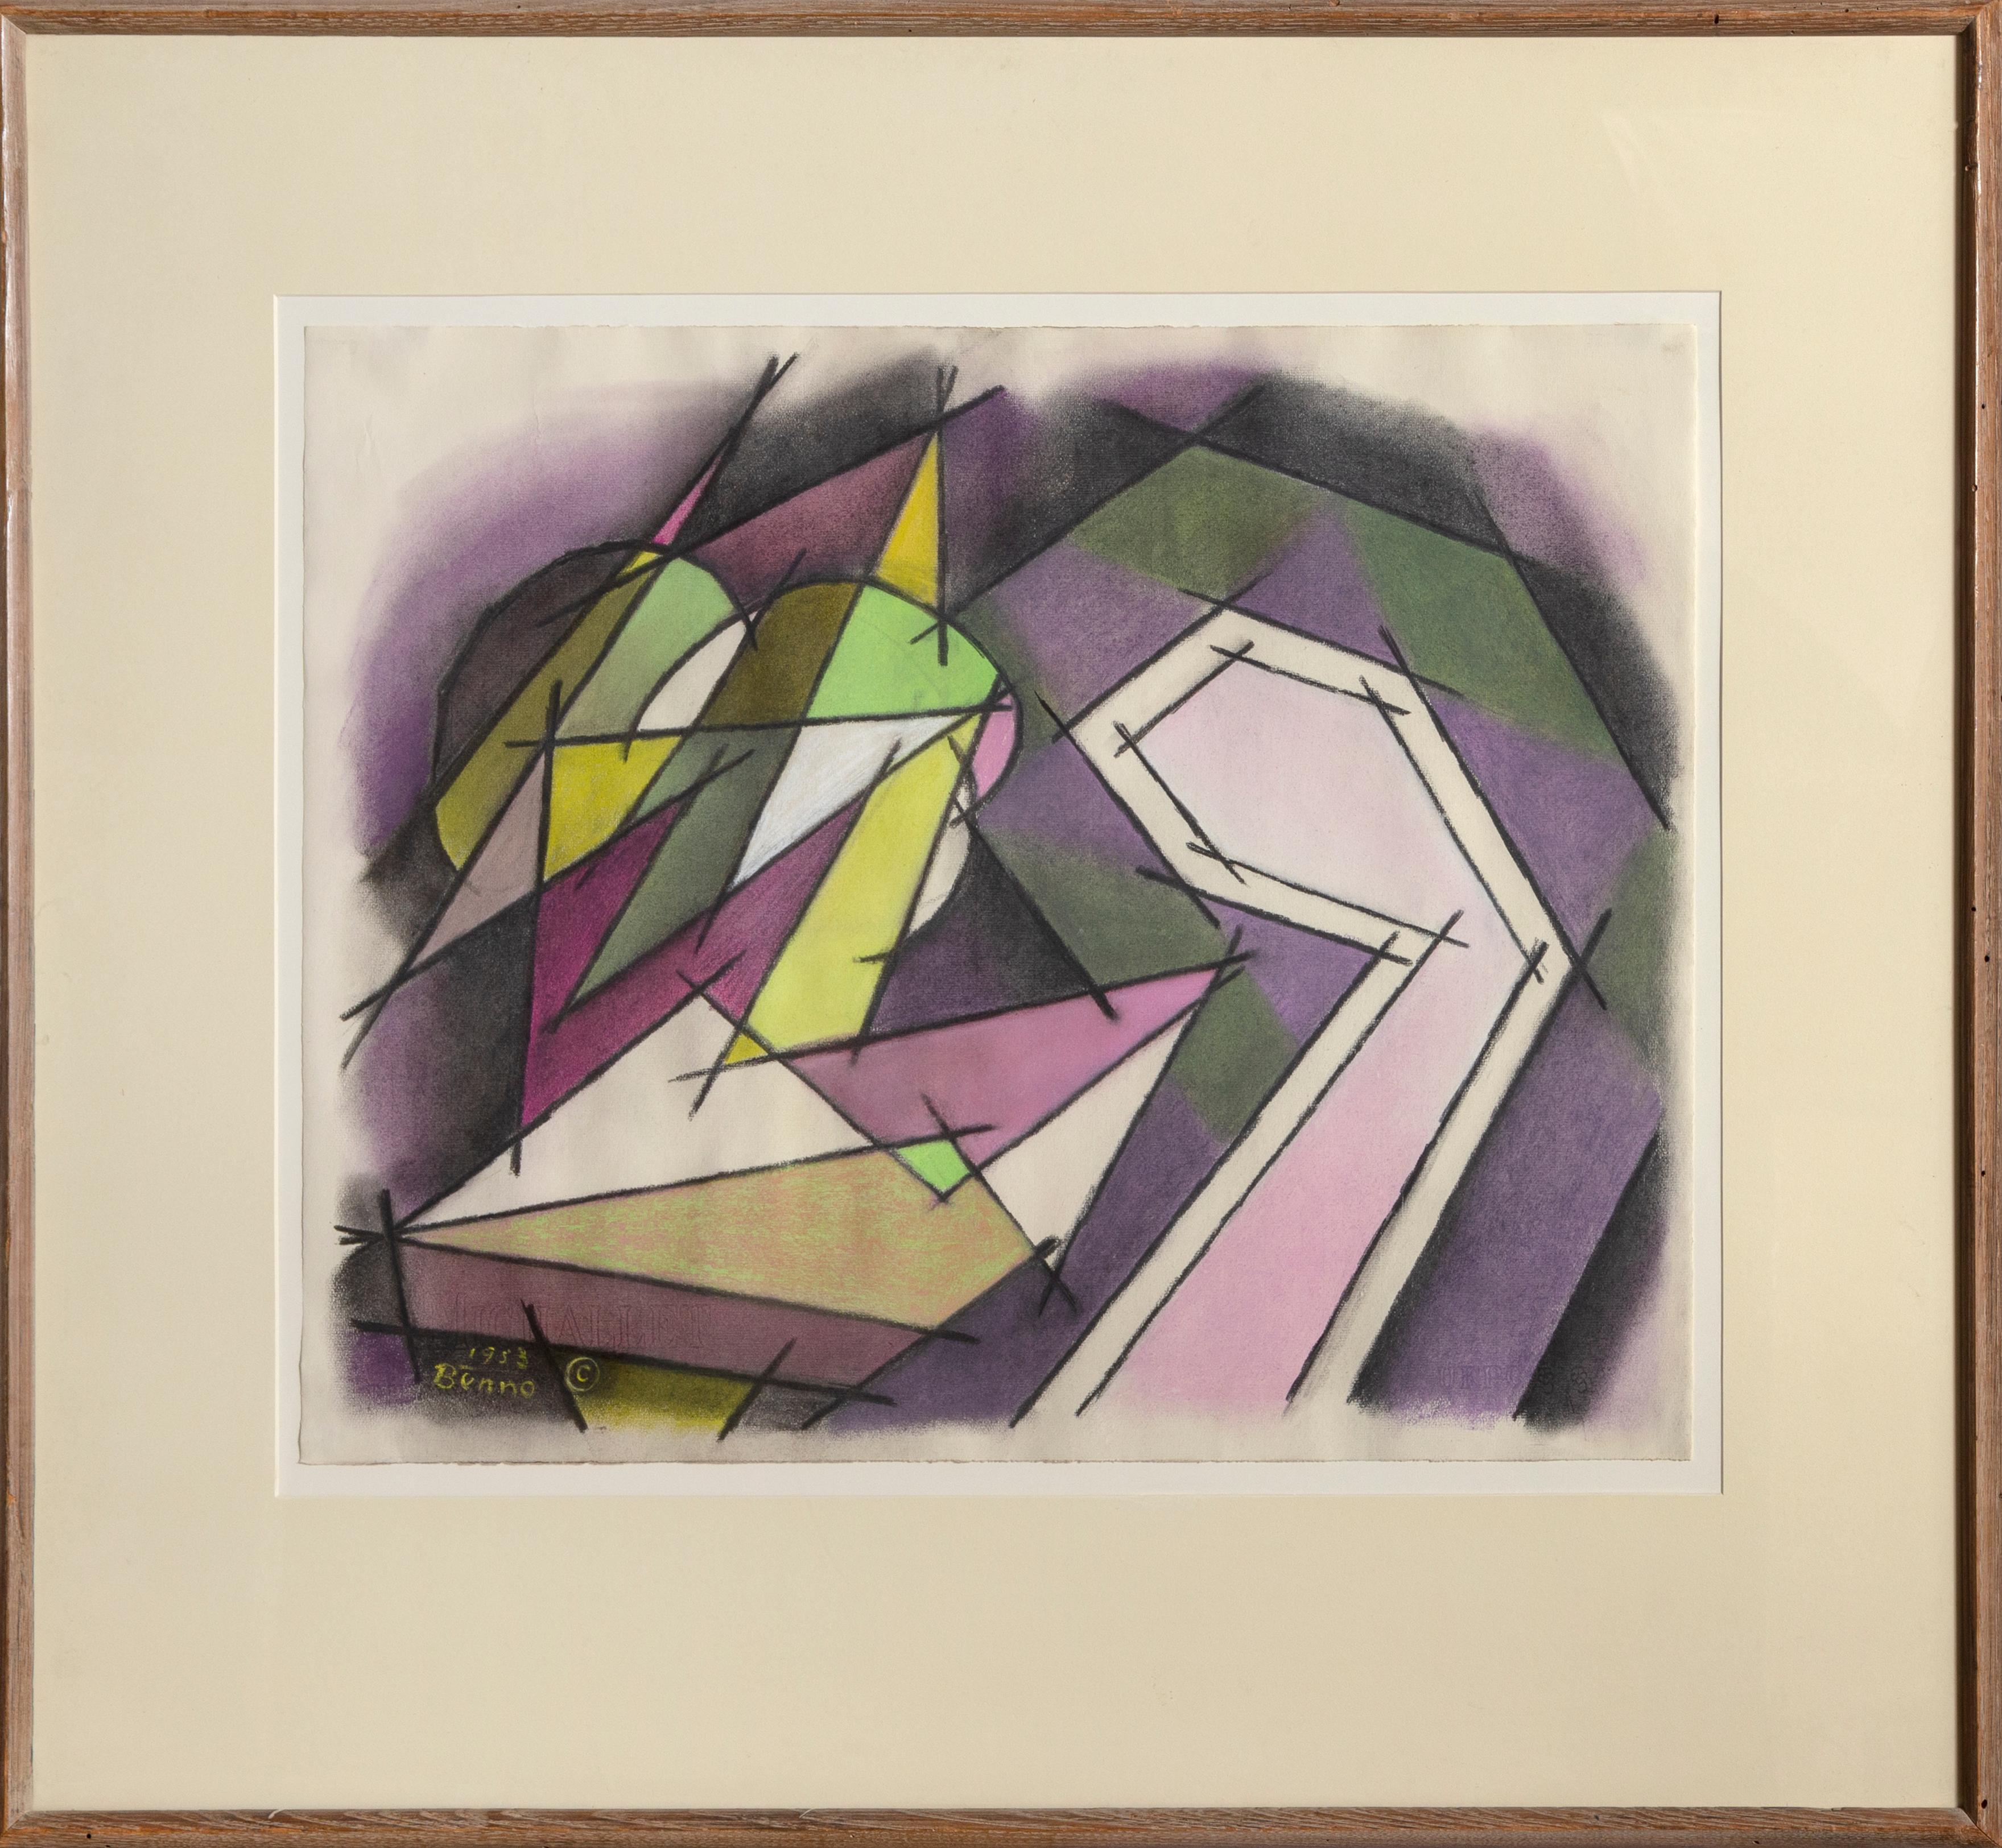 Kubistisches Stillleben mit grauer, grüner und violetter Zeichnung von Benjamin Benno, 1953